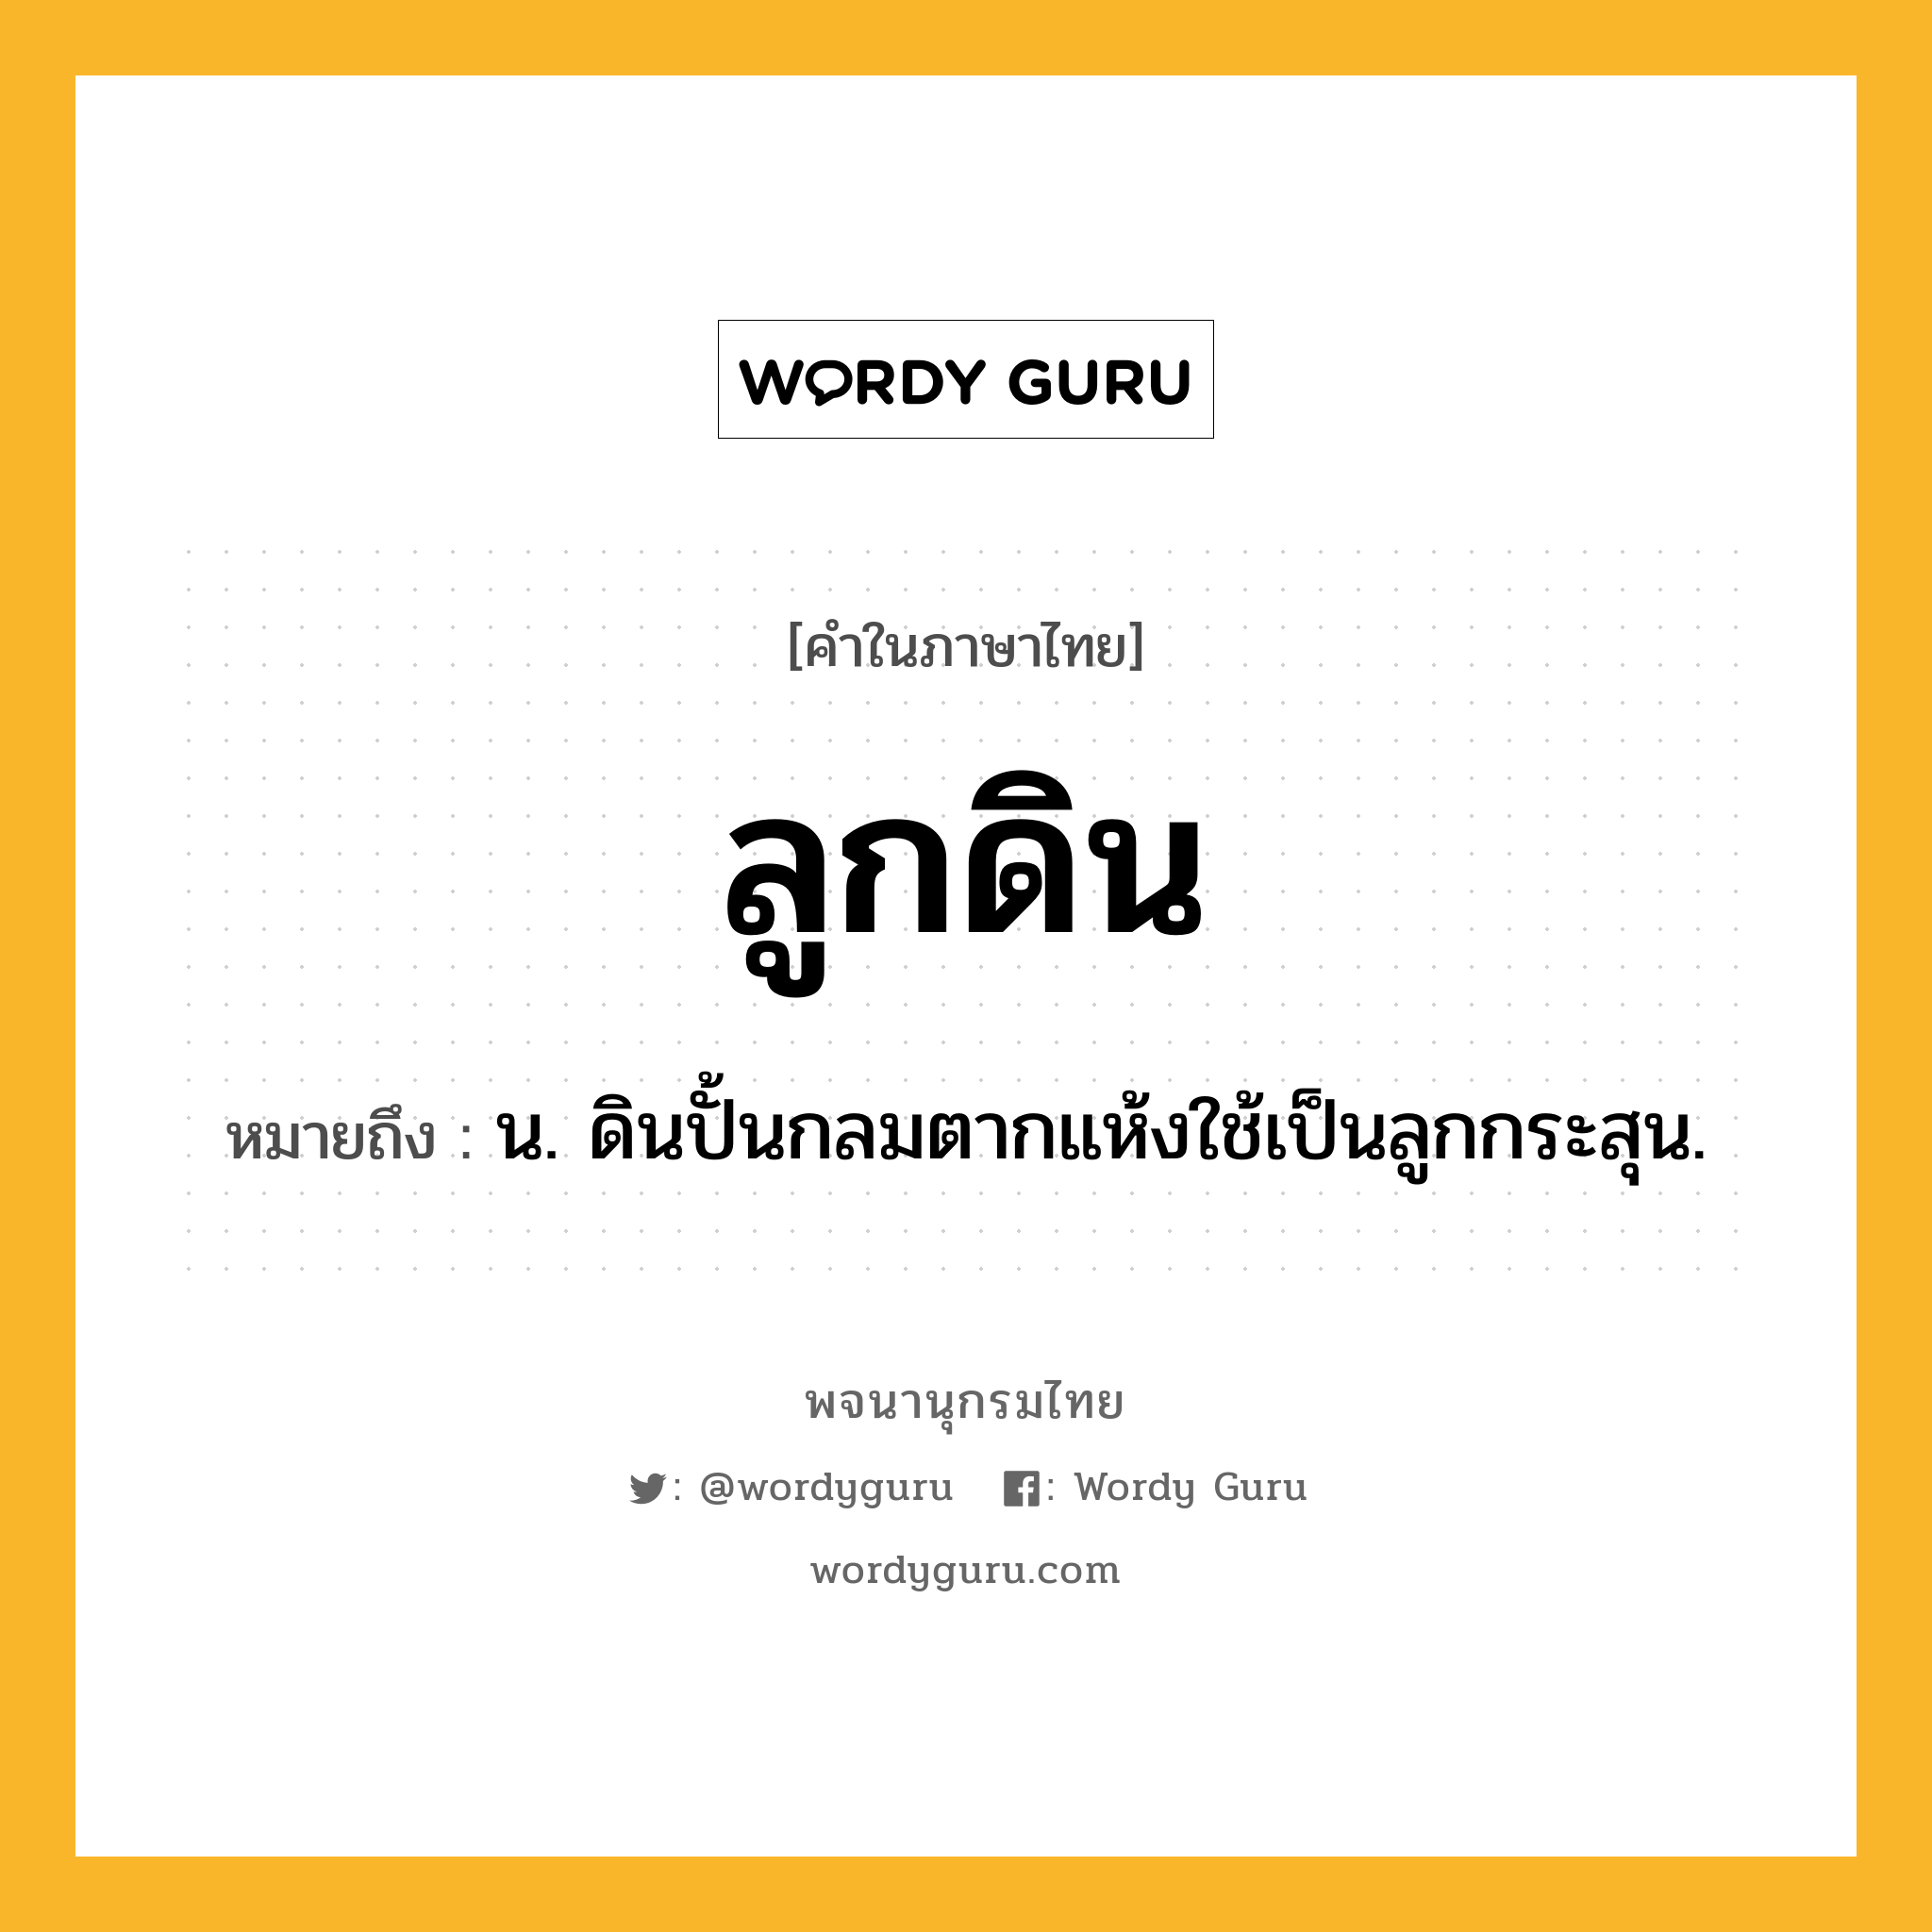 ลูกดิน หมายถึงอะไร?, คำในภาษาไทย ลูกดิน หมายถึง น. ดินปั้นกลมตากแห้งใช้เป็นลูกกระสุน.